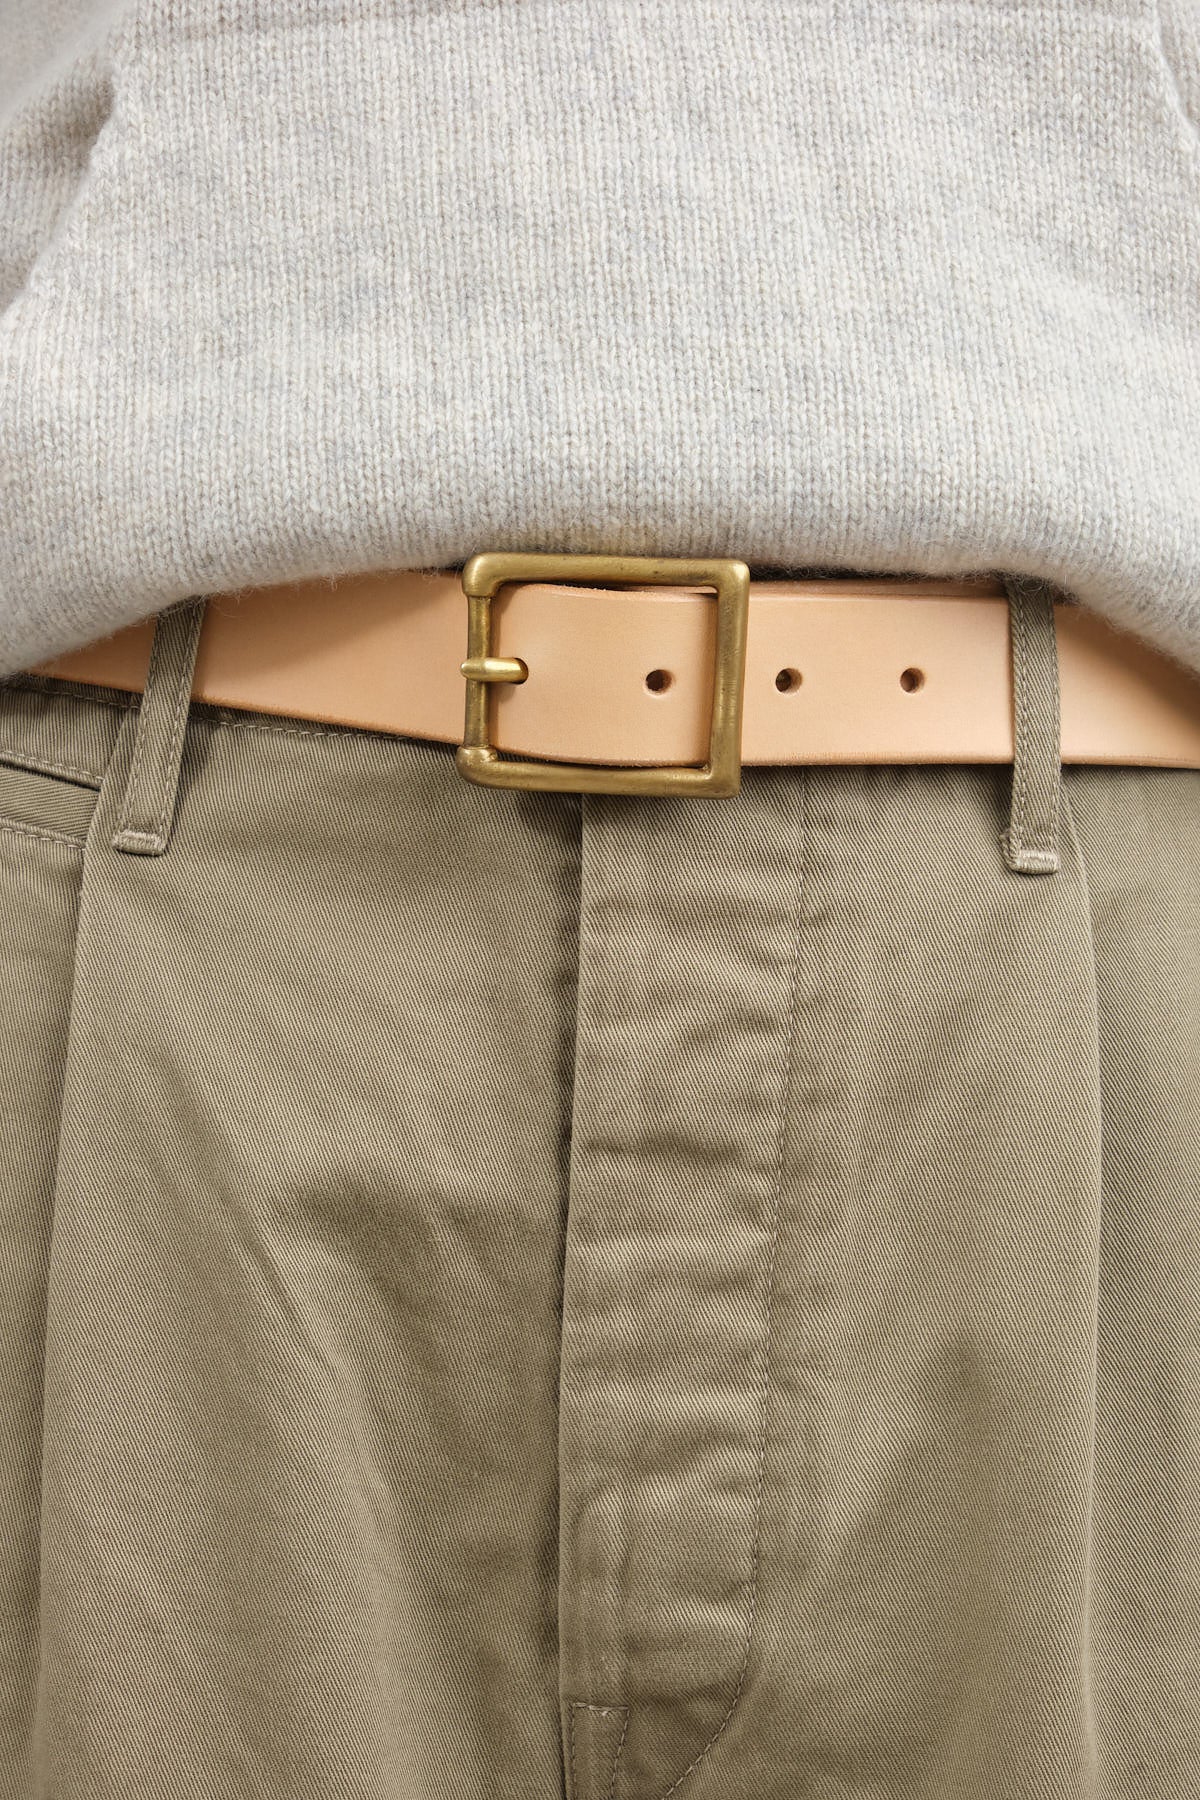 italian leather belts